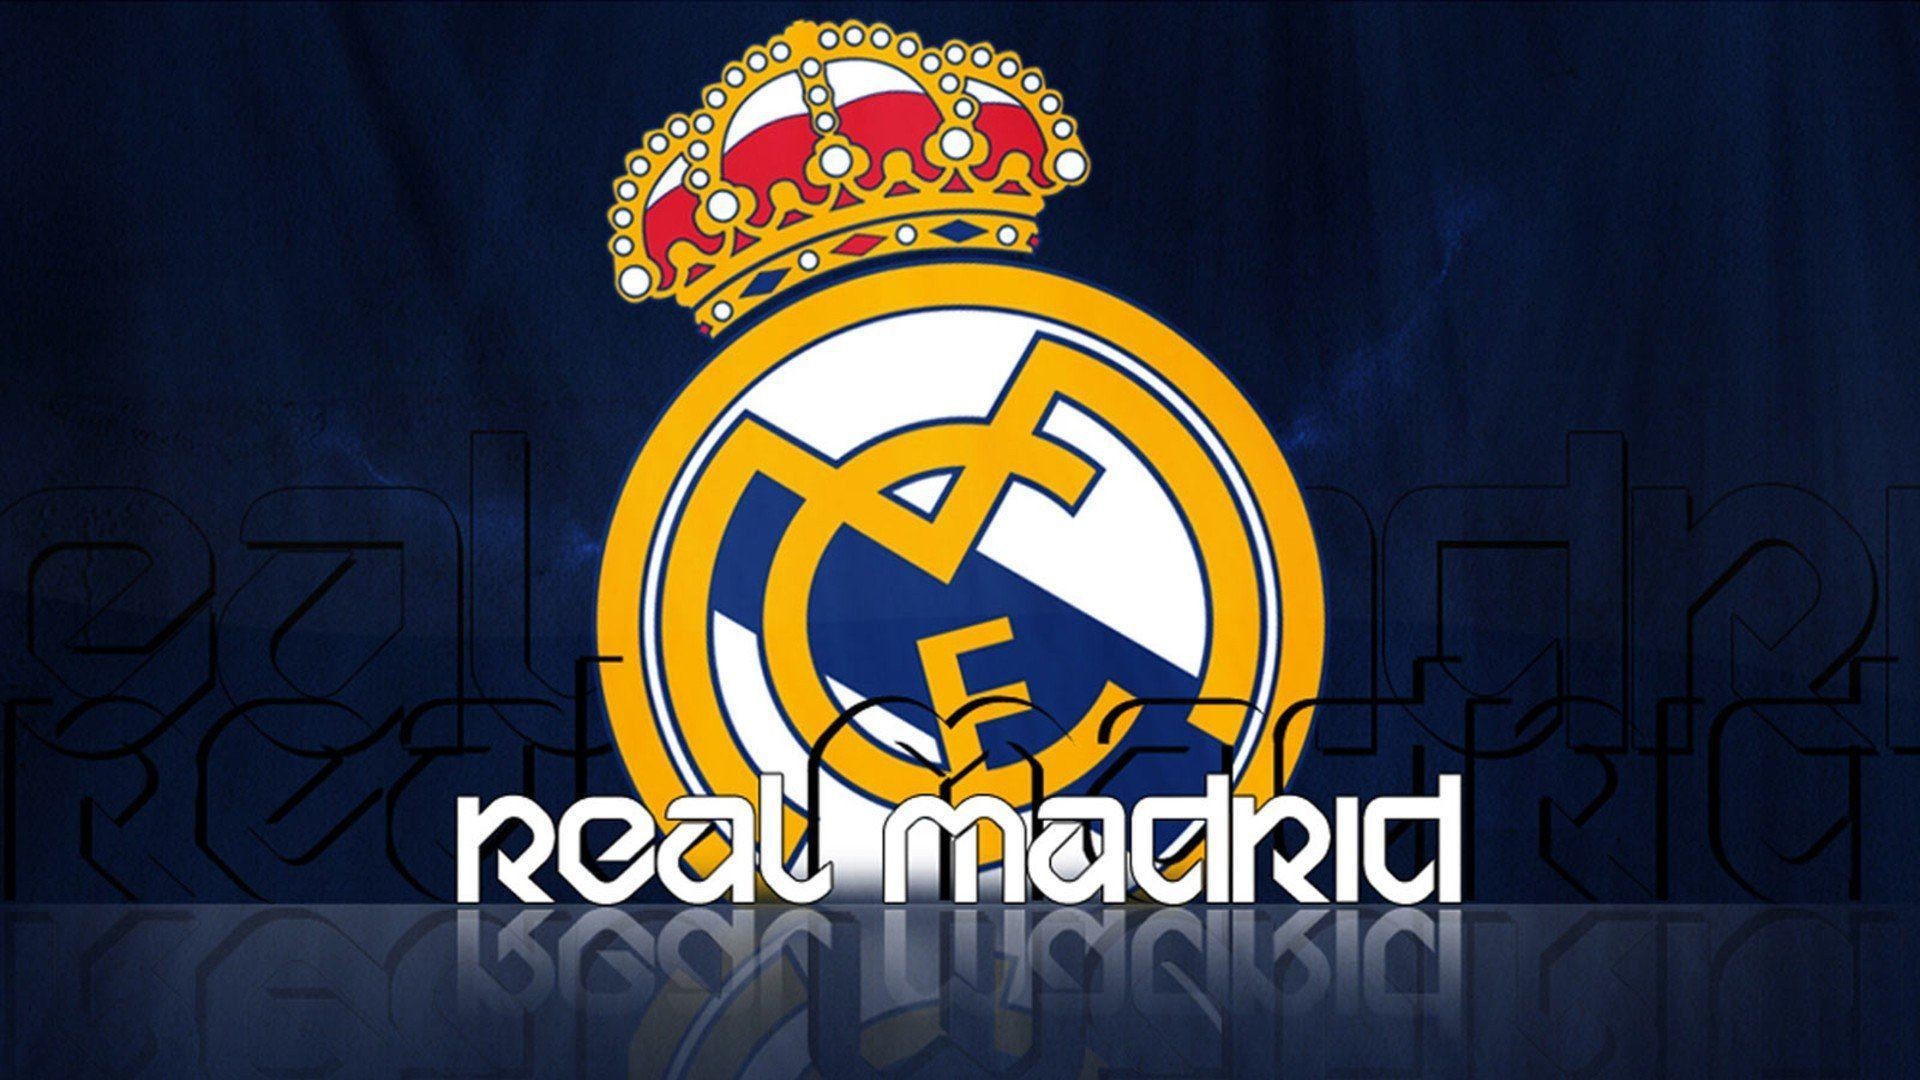 1920x1080 Sports soccer Real Madrid football teams Football Logos wallpaper .